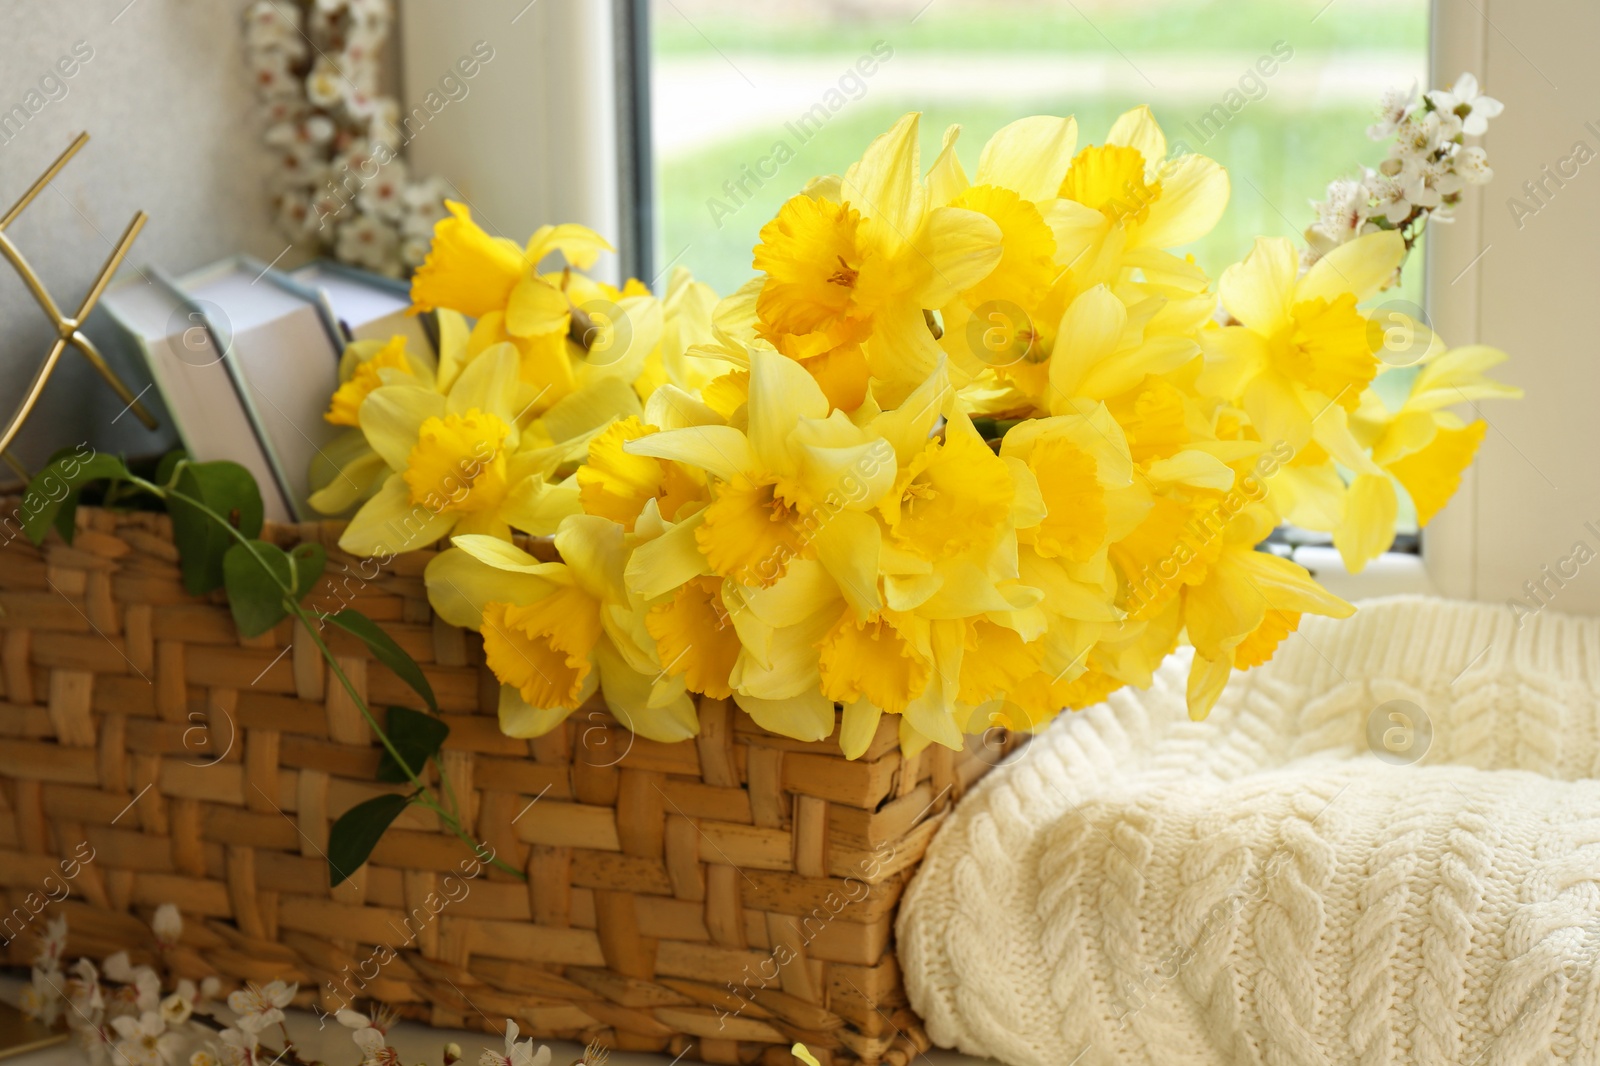 Photo of Beautiful yellow daffodils in wicker basket near window, closeup